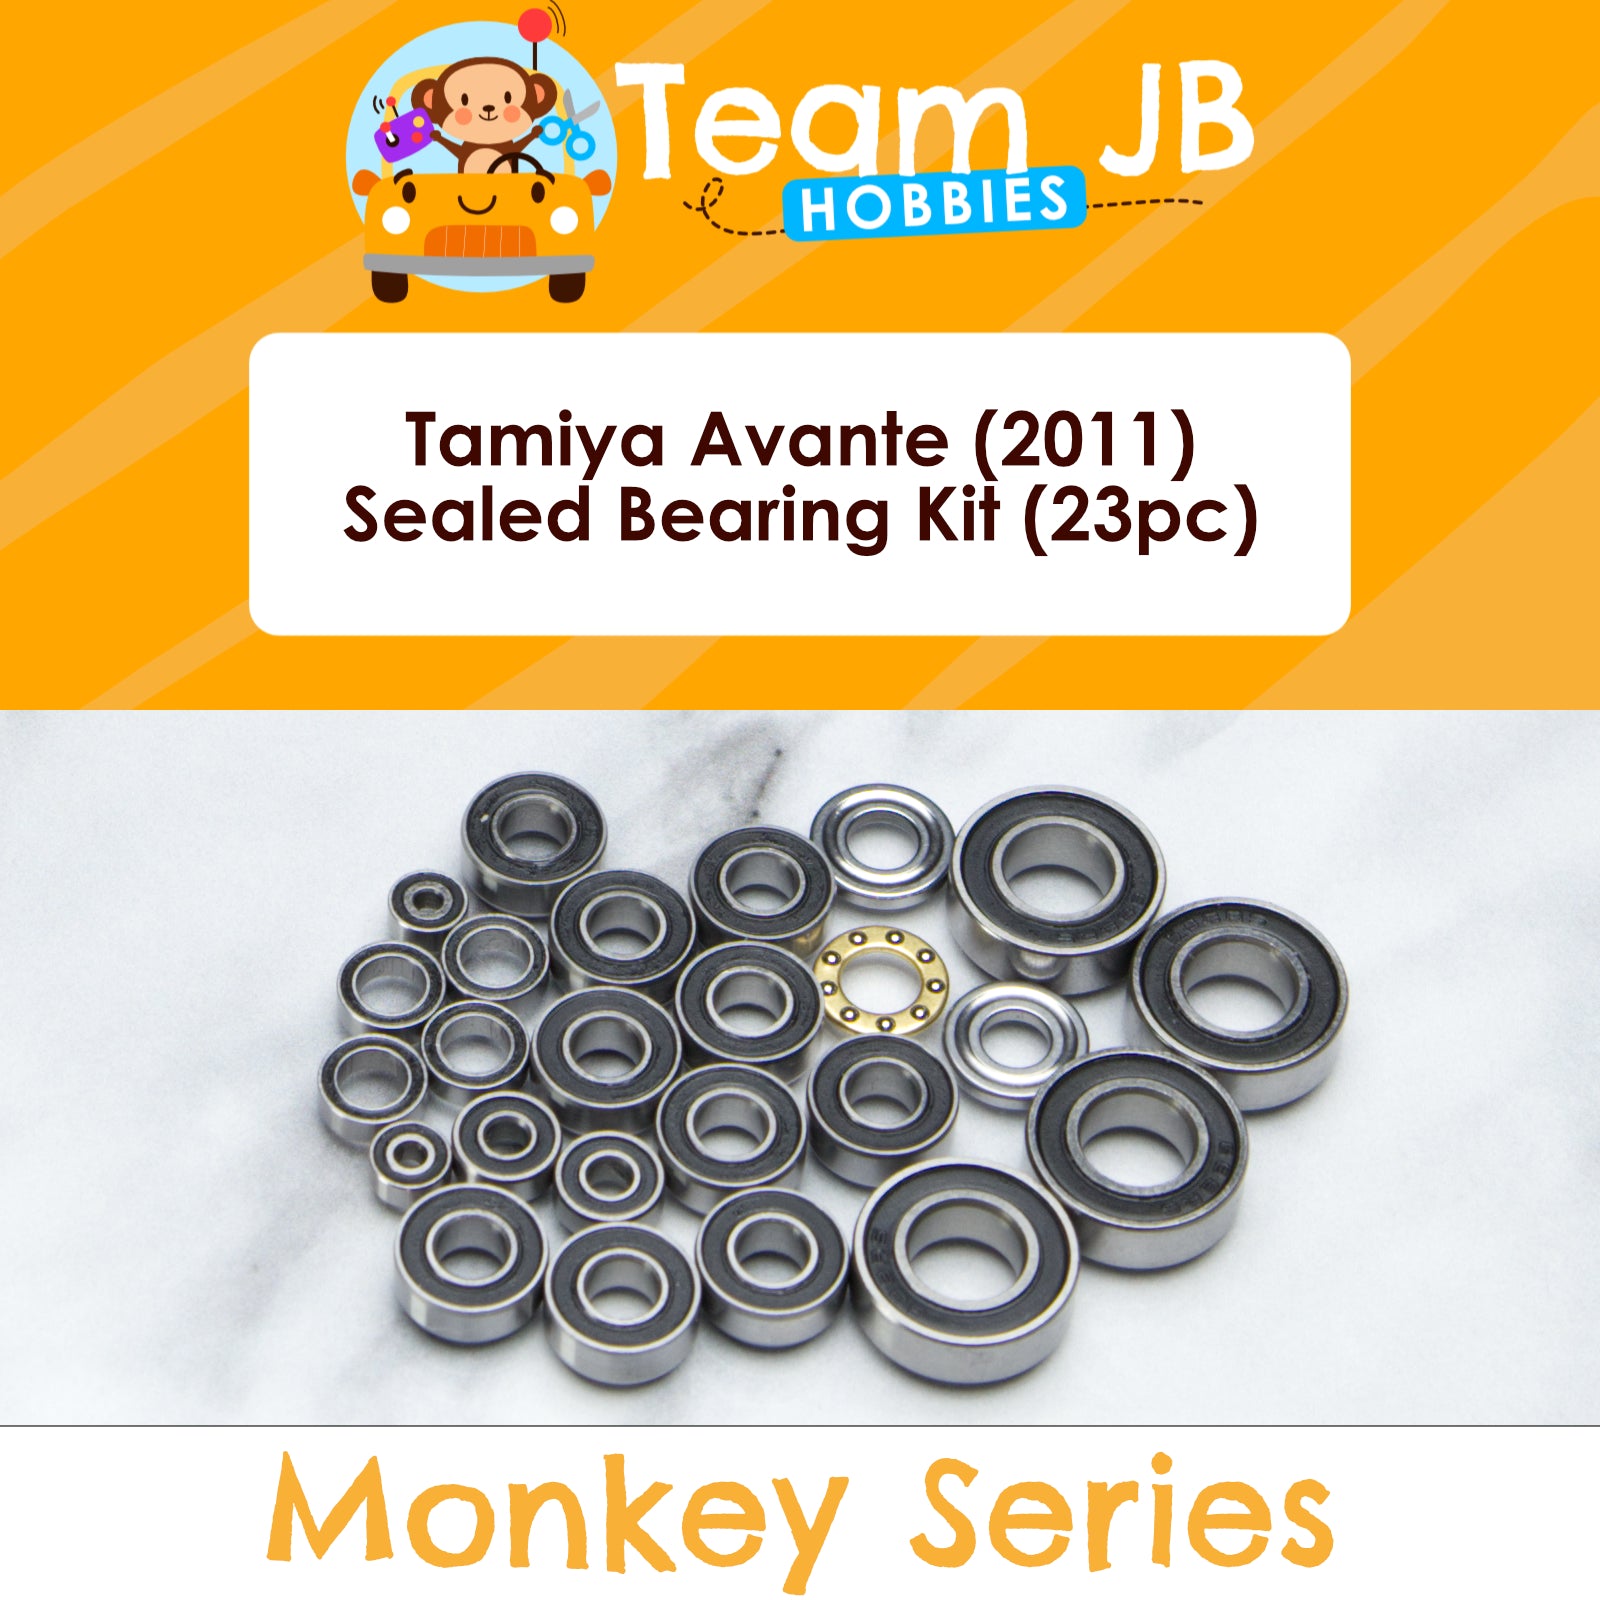 Tamiya Avante (2011) - Sealed Bearing Kit